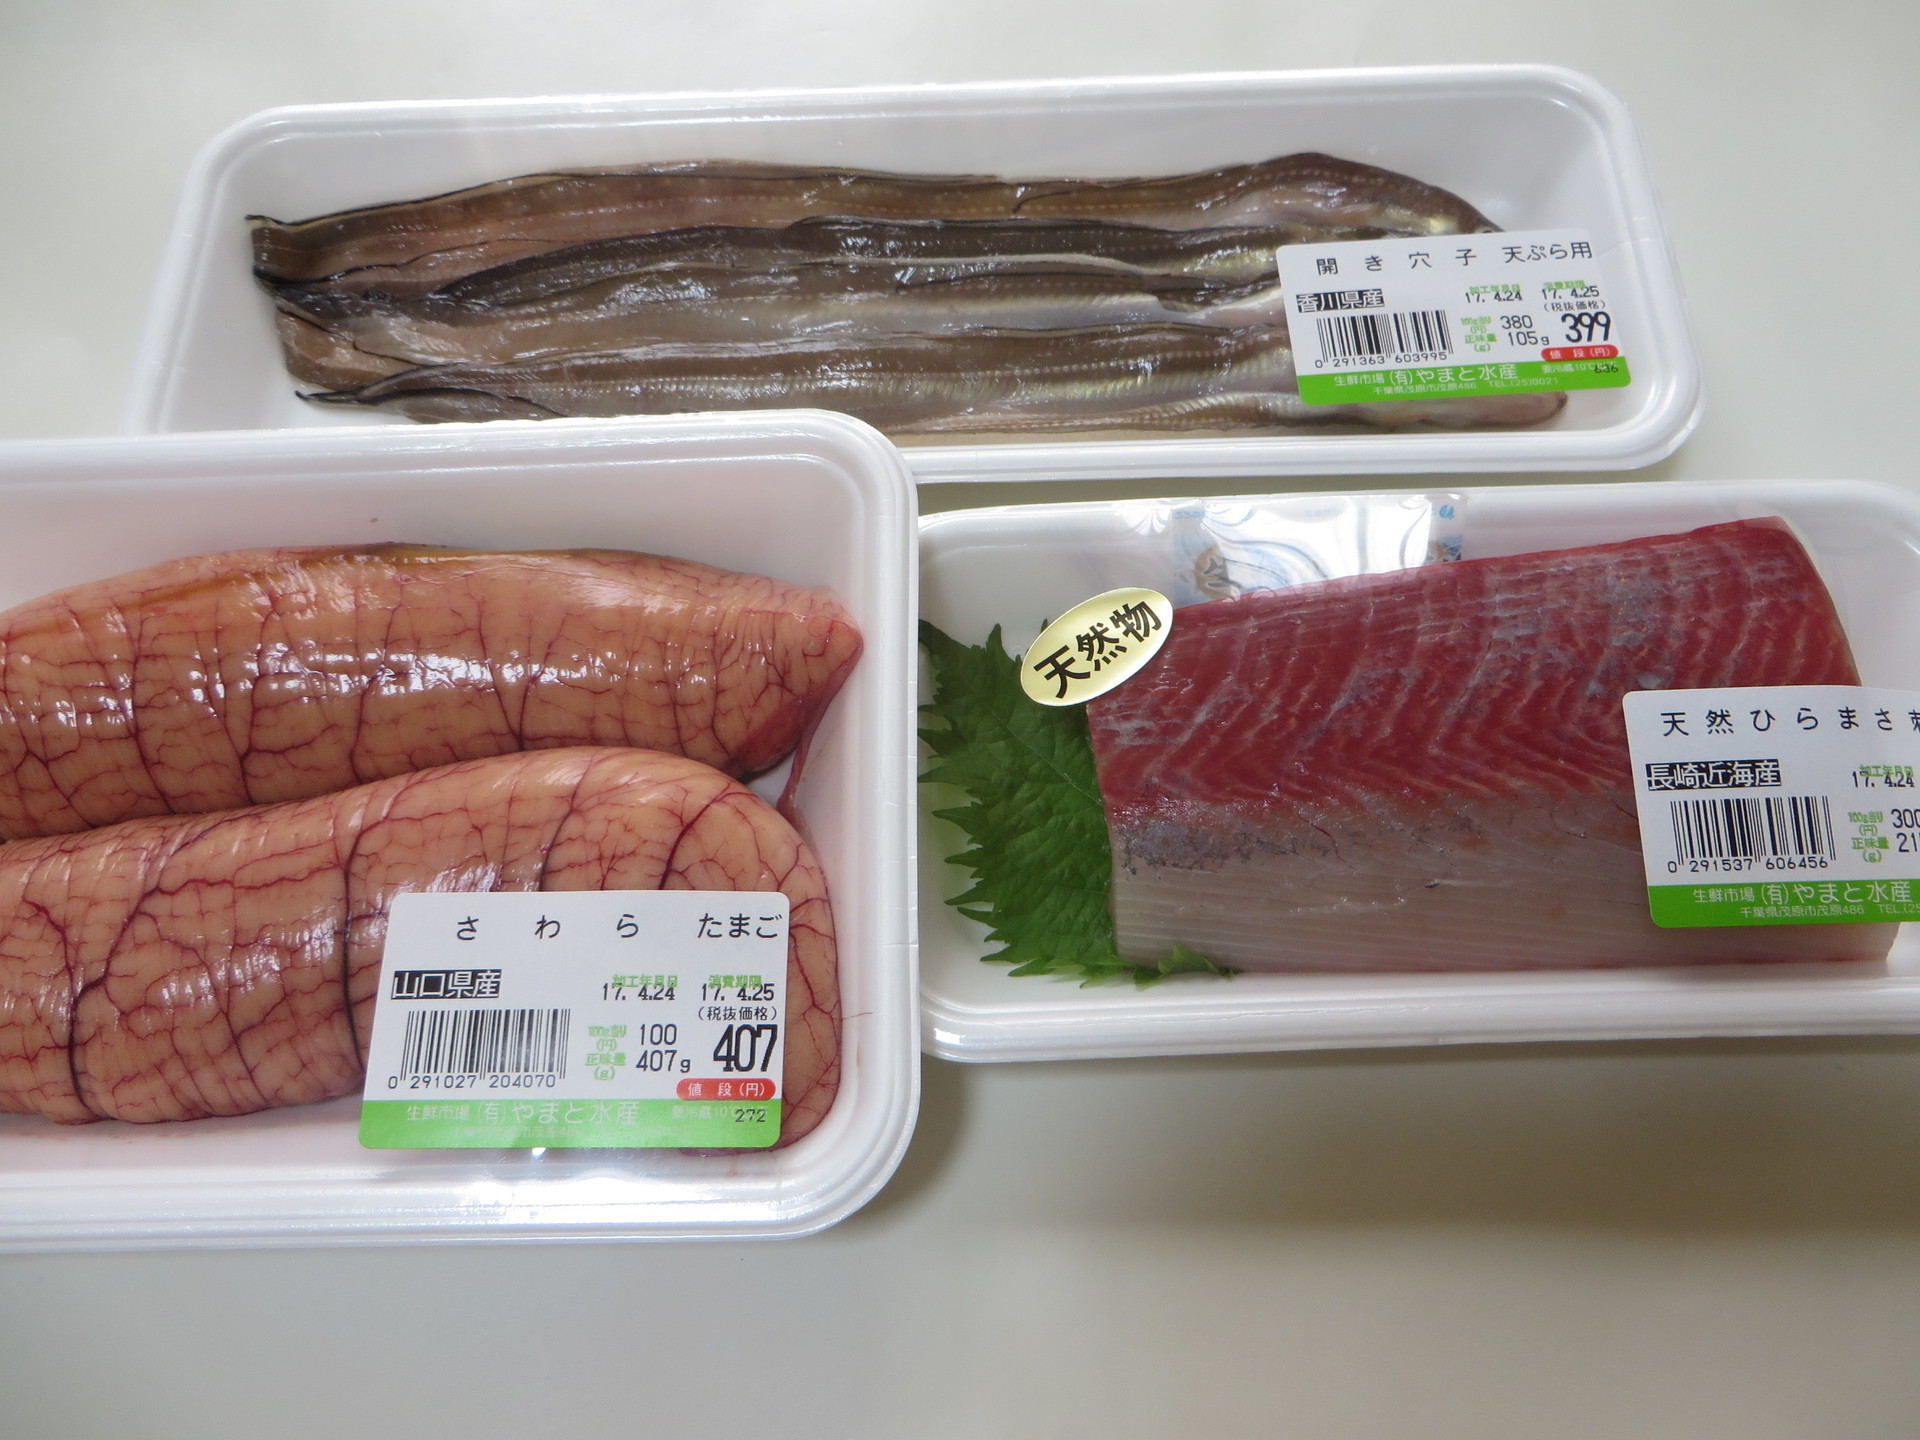 茂原市内のライフというスーパーで天然ひらまさ 松川カレイ オコゼの姿造りなどを購入した 房総半島の鮮魚店で こんな魚を買ってみた